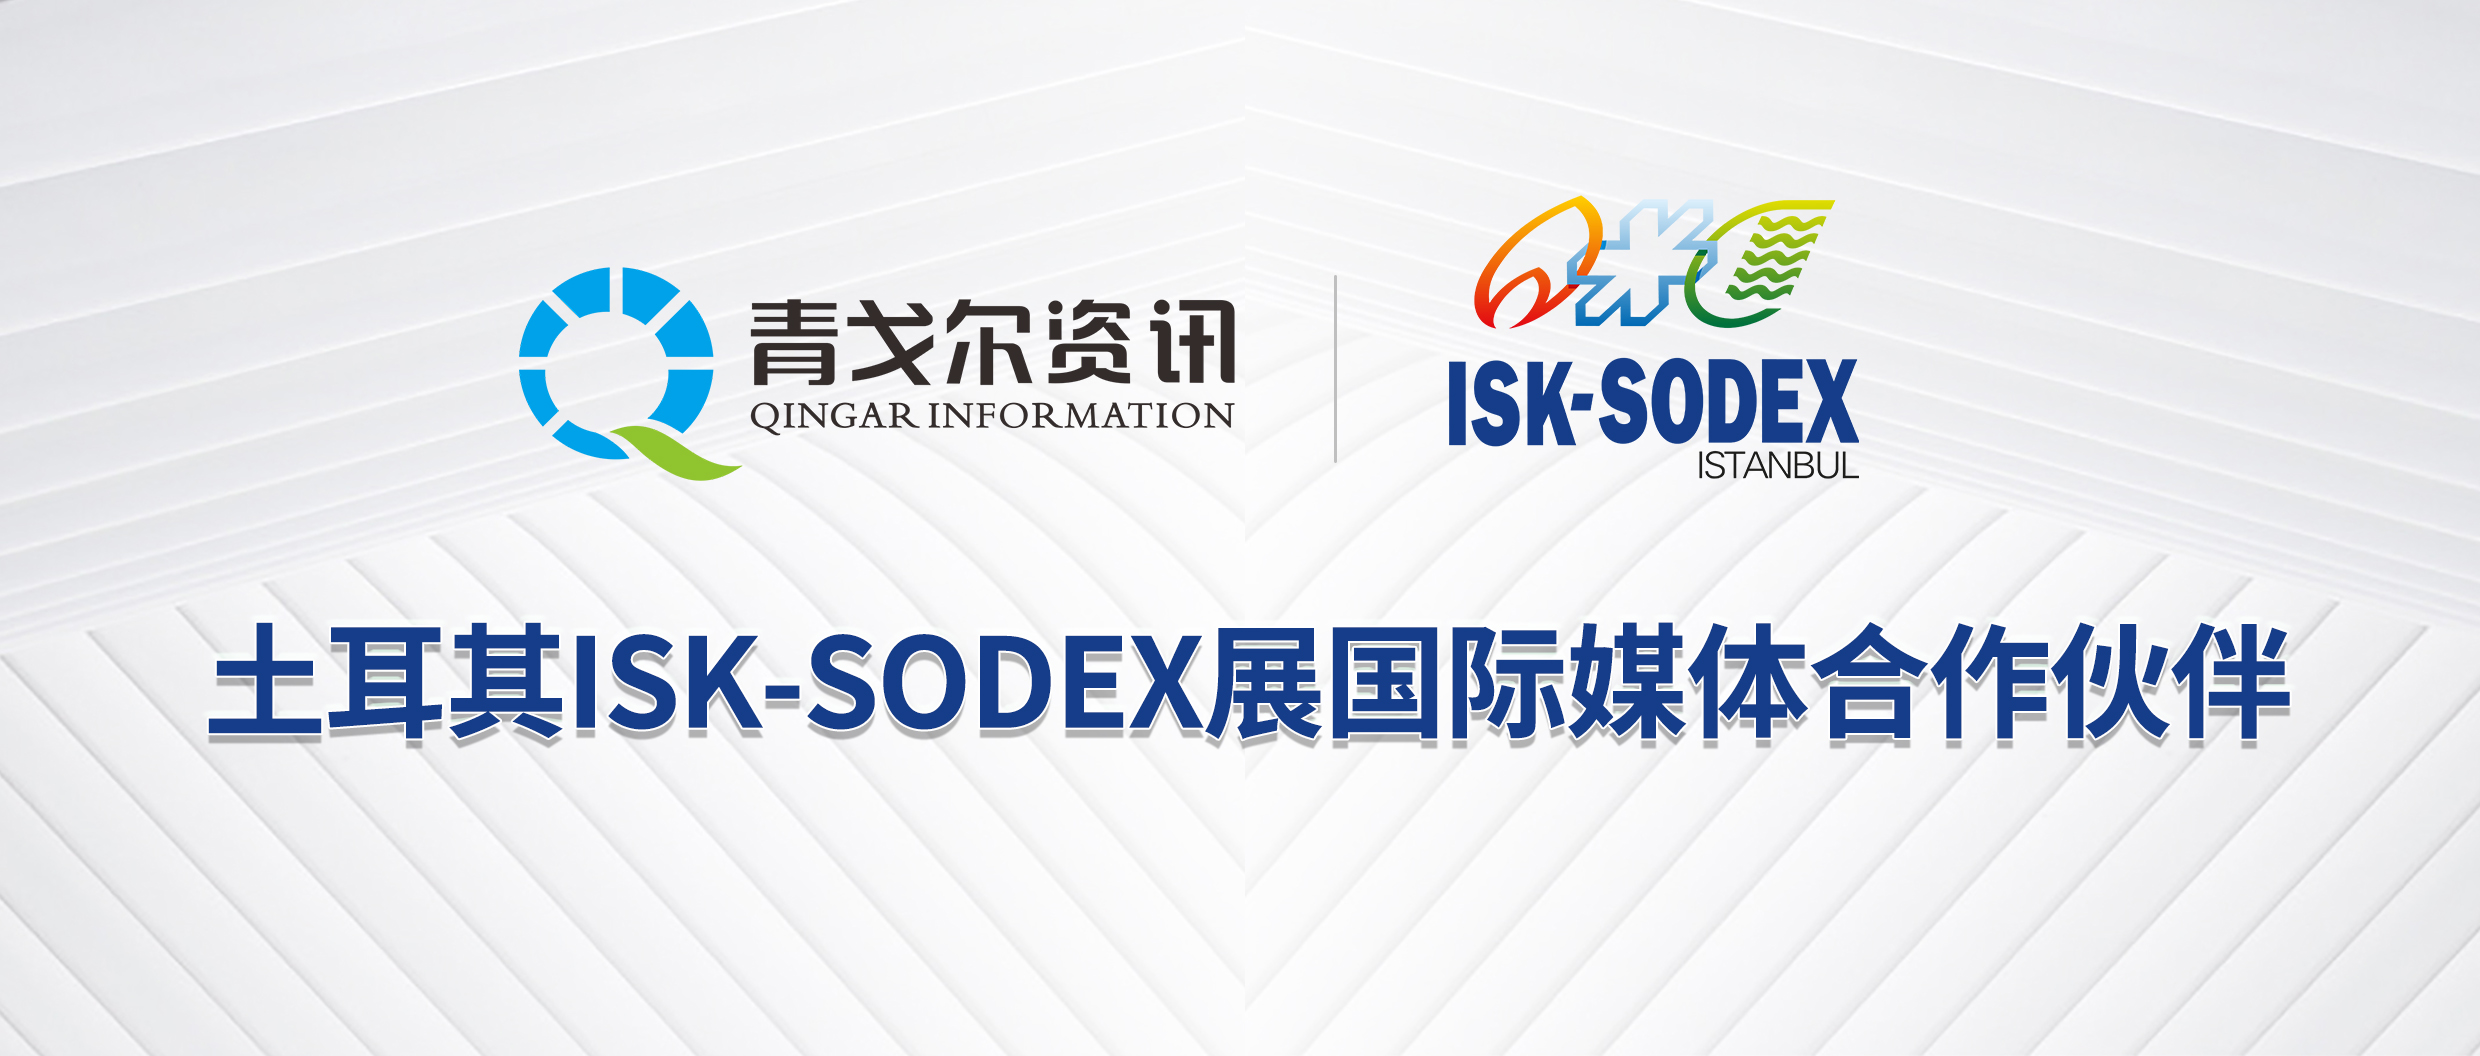 国际知名暖通行业展会土耳其ISK-SODEX展将于2023年10月25-28日在伊斯坦布尔举行。近日，青戈尔资讯与ISK-SODEX达成媒体合作伙伴关系，成为I...